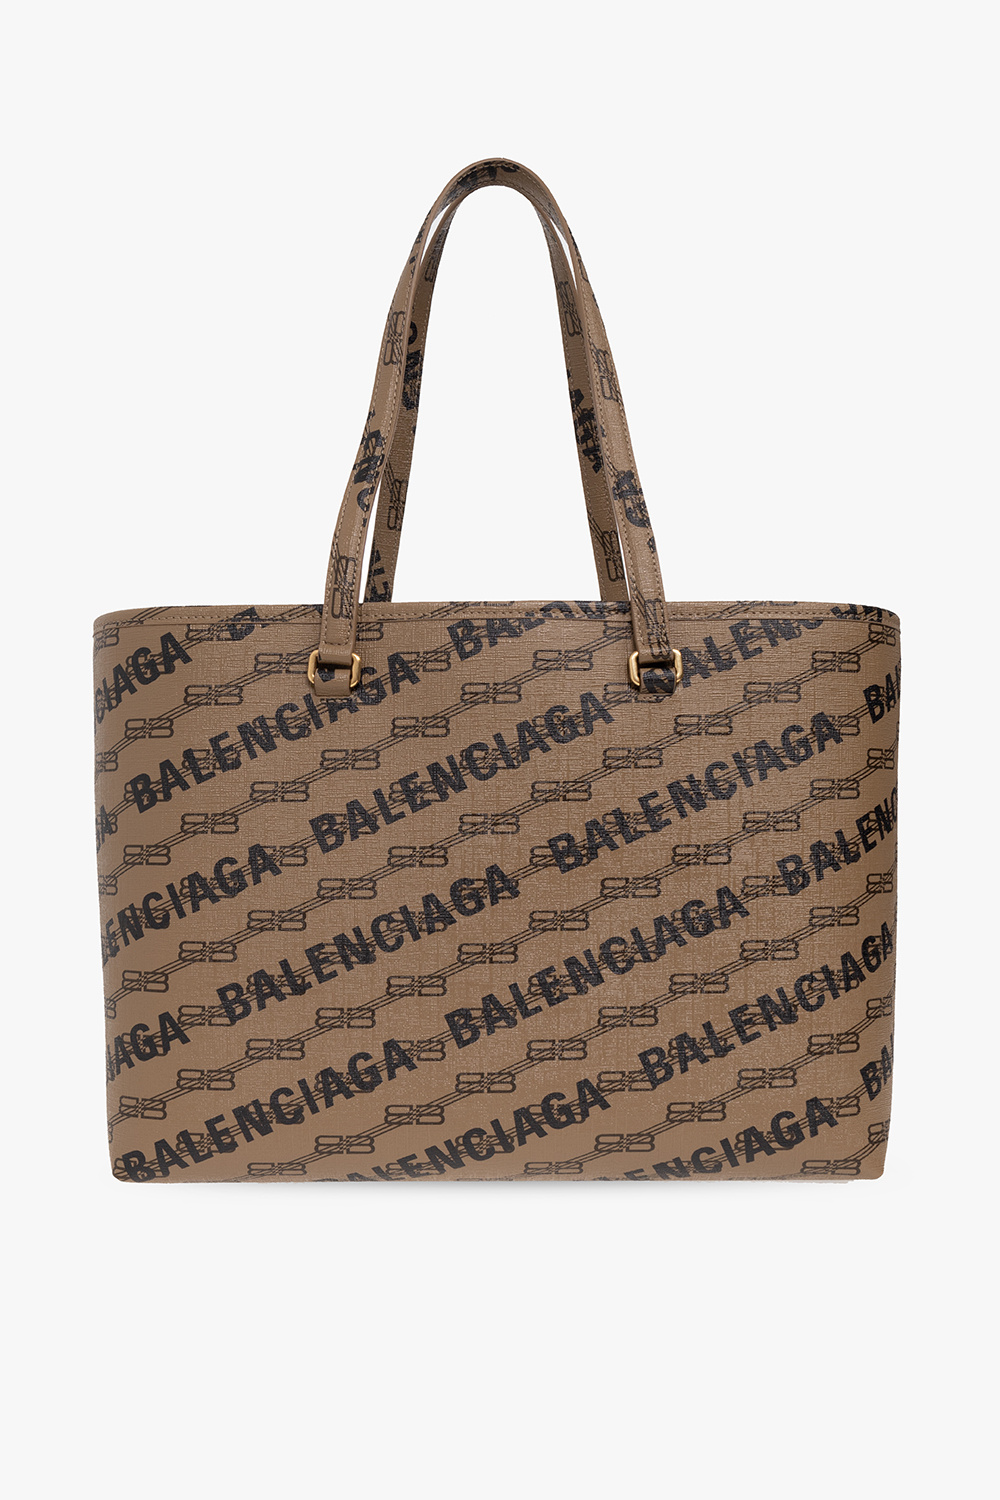 Balenciaga ‘Signature’ shopper bag